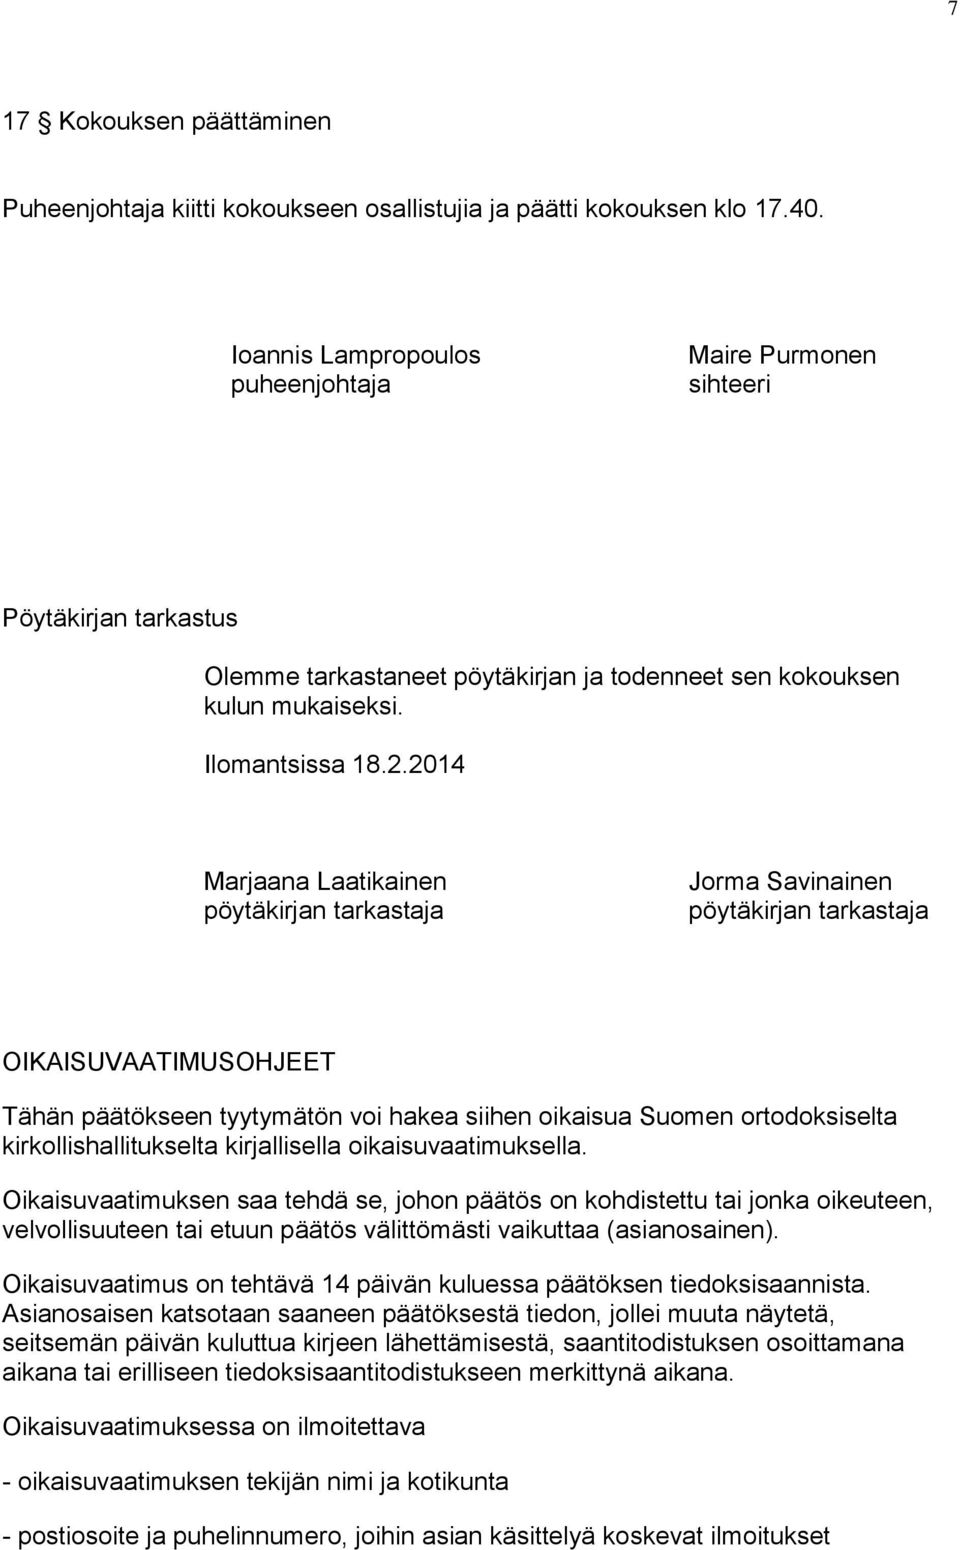 2014 Marjaana Laatikainen pöytäkirjan tarkastaja Jorma Savinainen pöytäkirjan tarkastaja OIKAISUVAATIMUSOHJEET Tähän päätökseen tyytymätön voi hakea siihen oikaisua Suomen ortodoksiselta